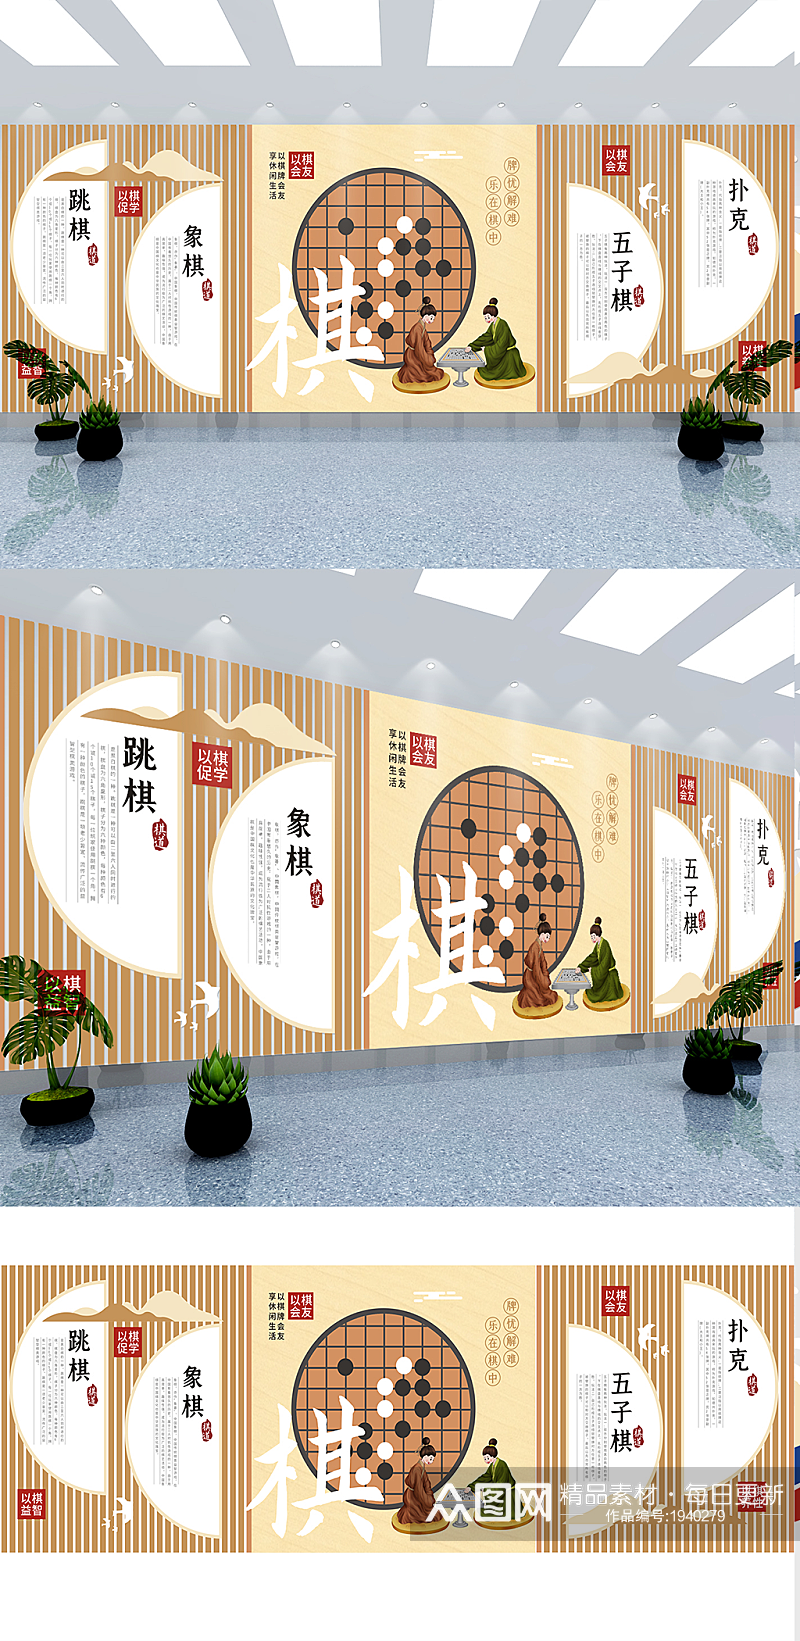 中国风社区棋牌室文化墙素材